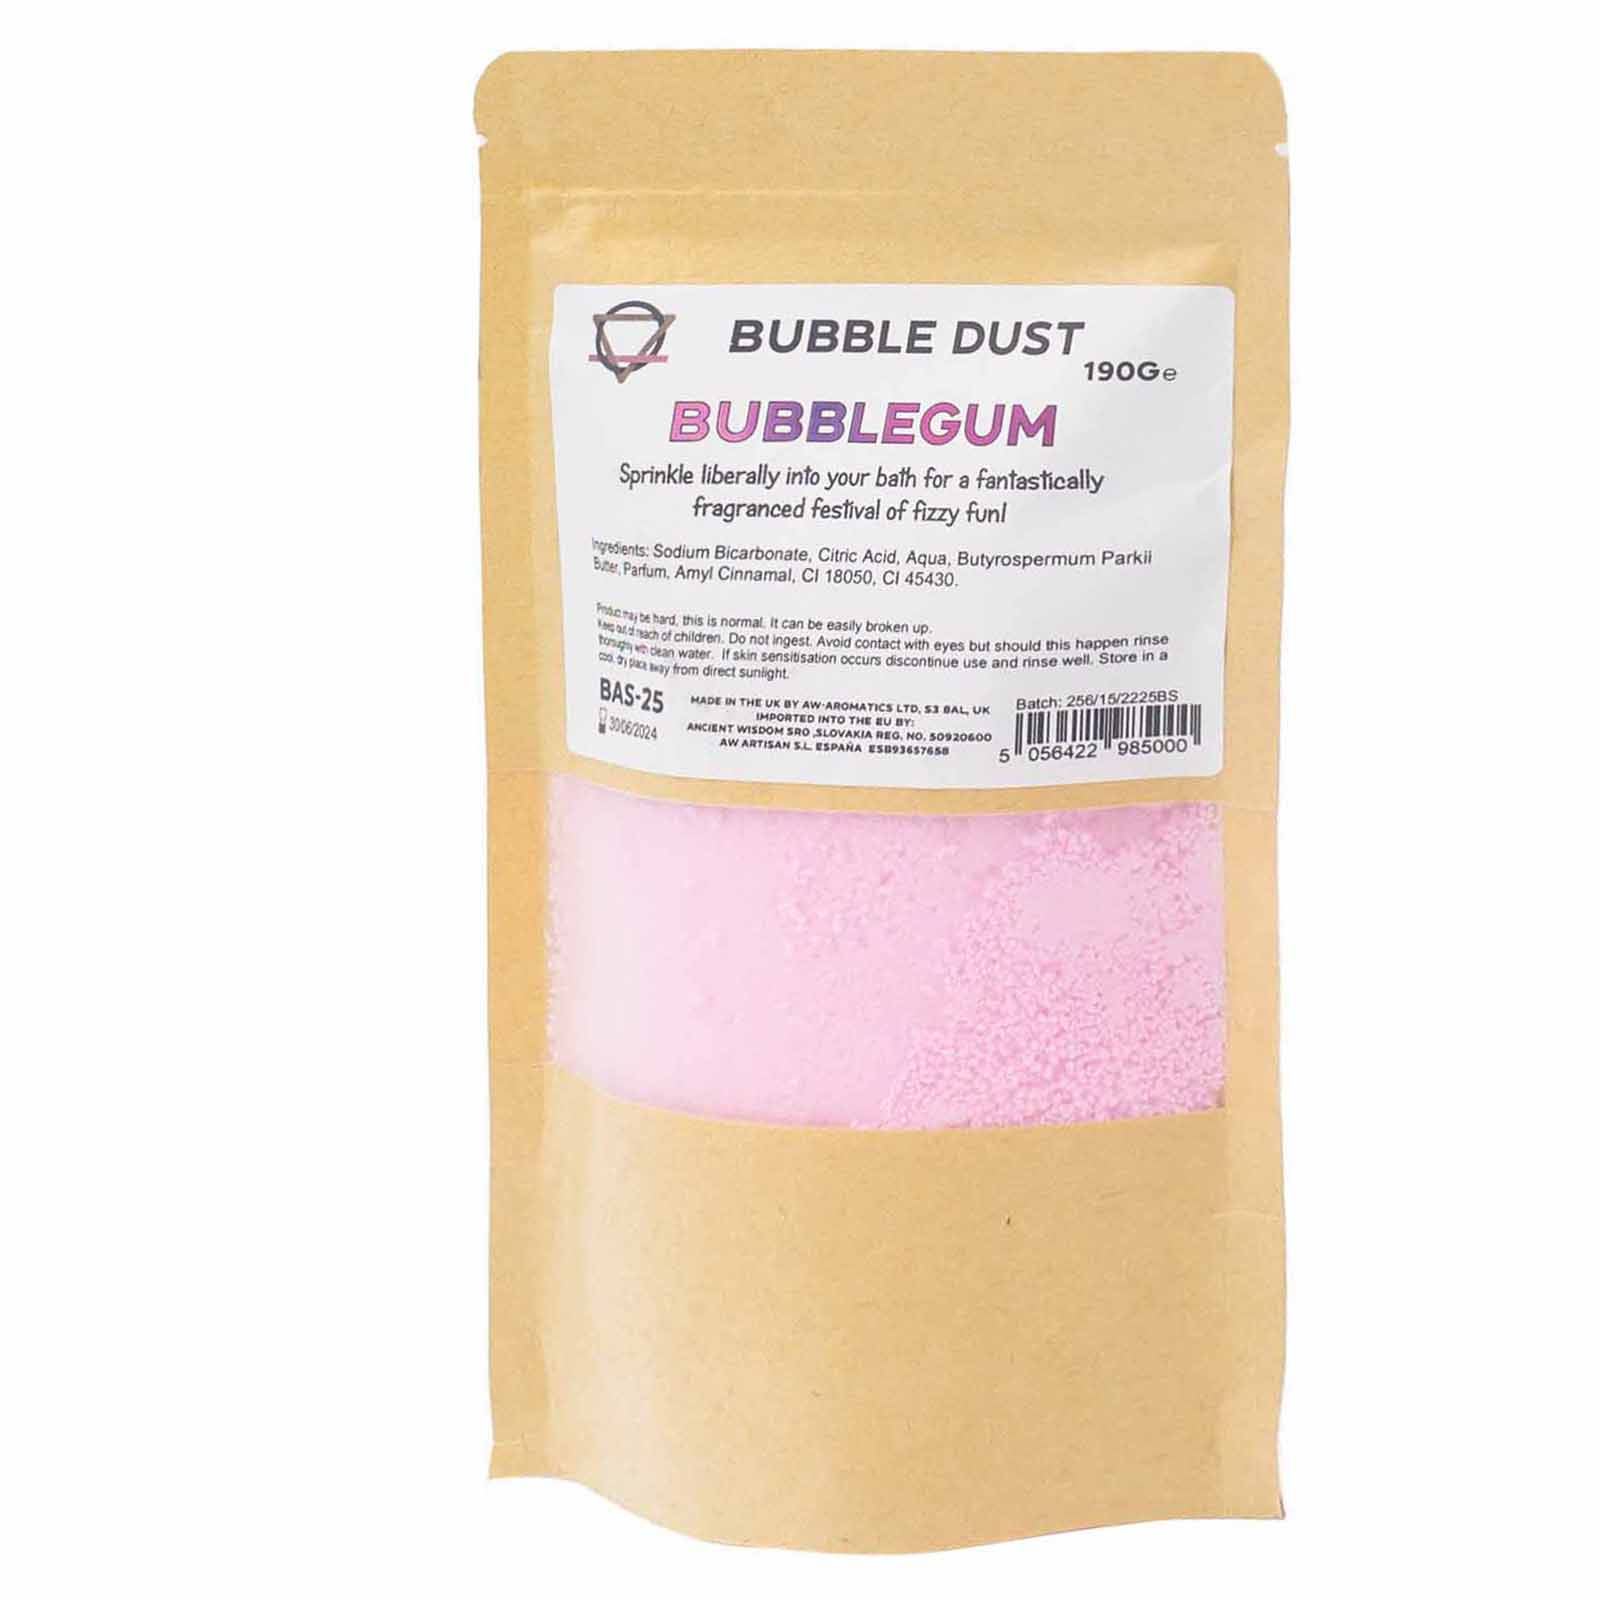 View Bubblegum Bath Dust 190g information